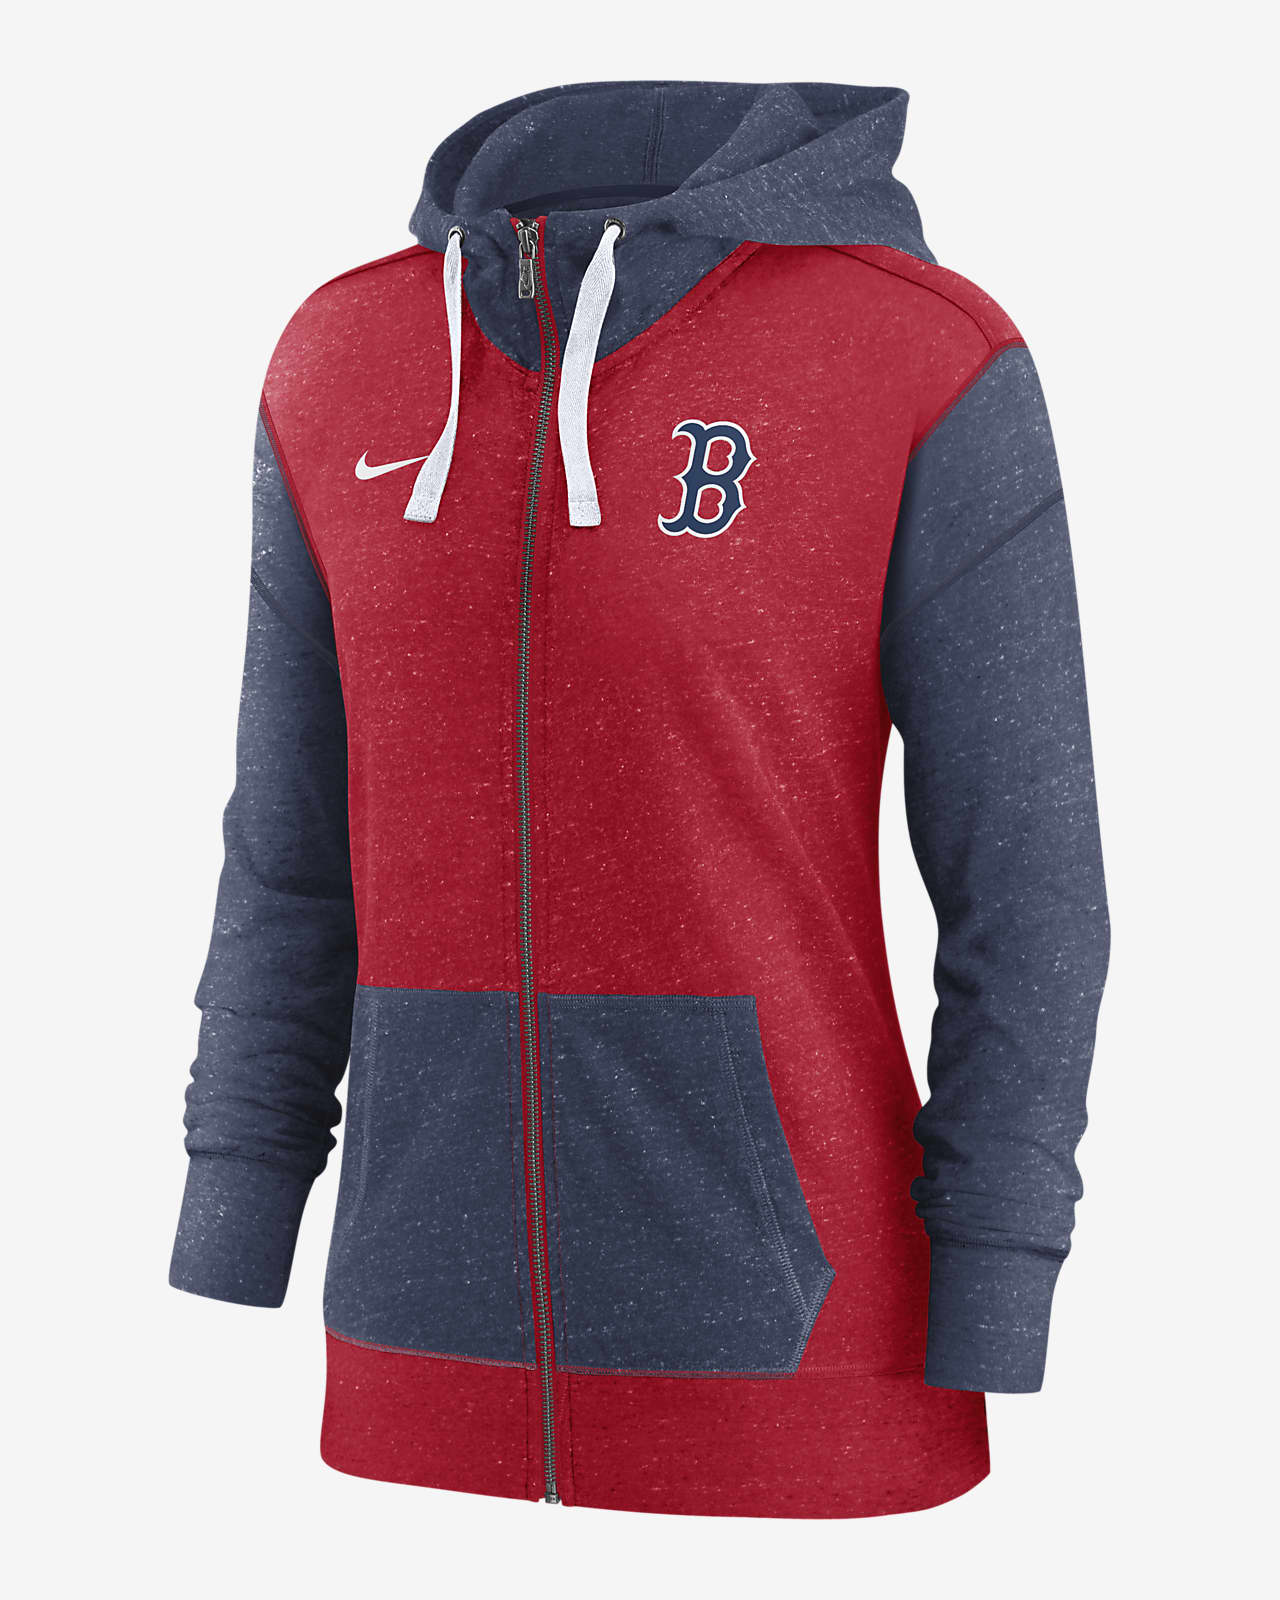 Boston Red Sox Full-Zip Hoodie - Red